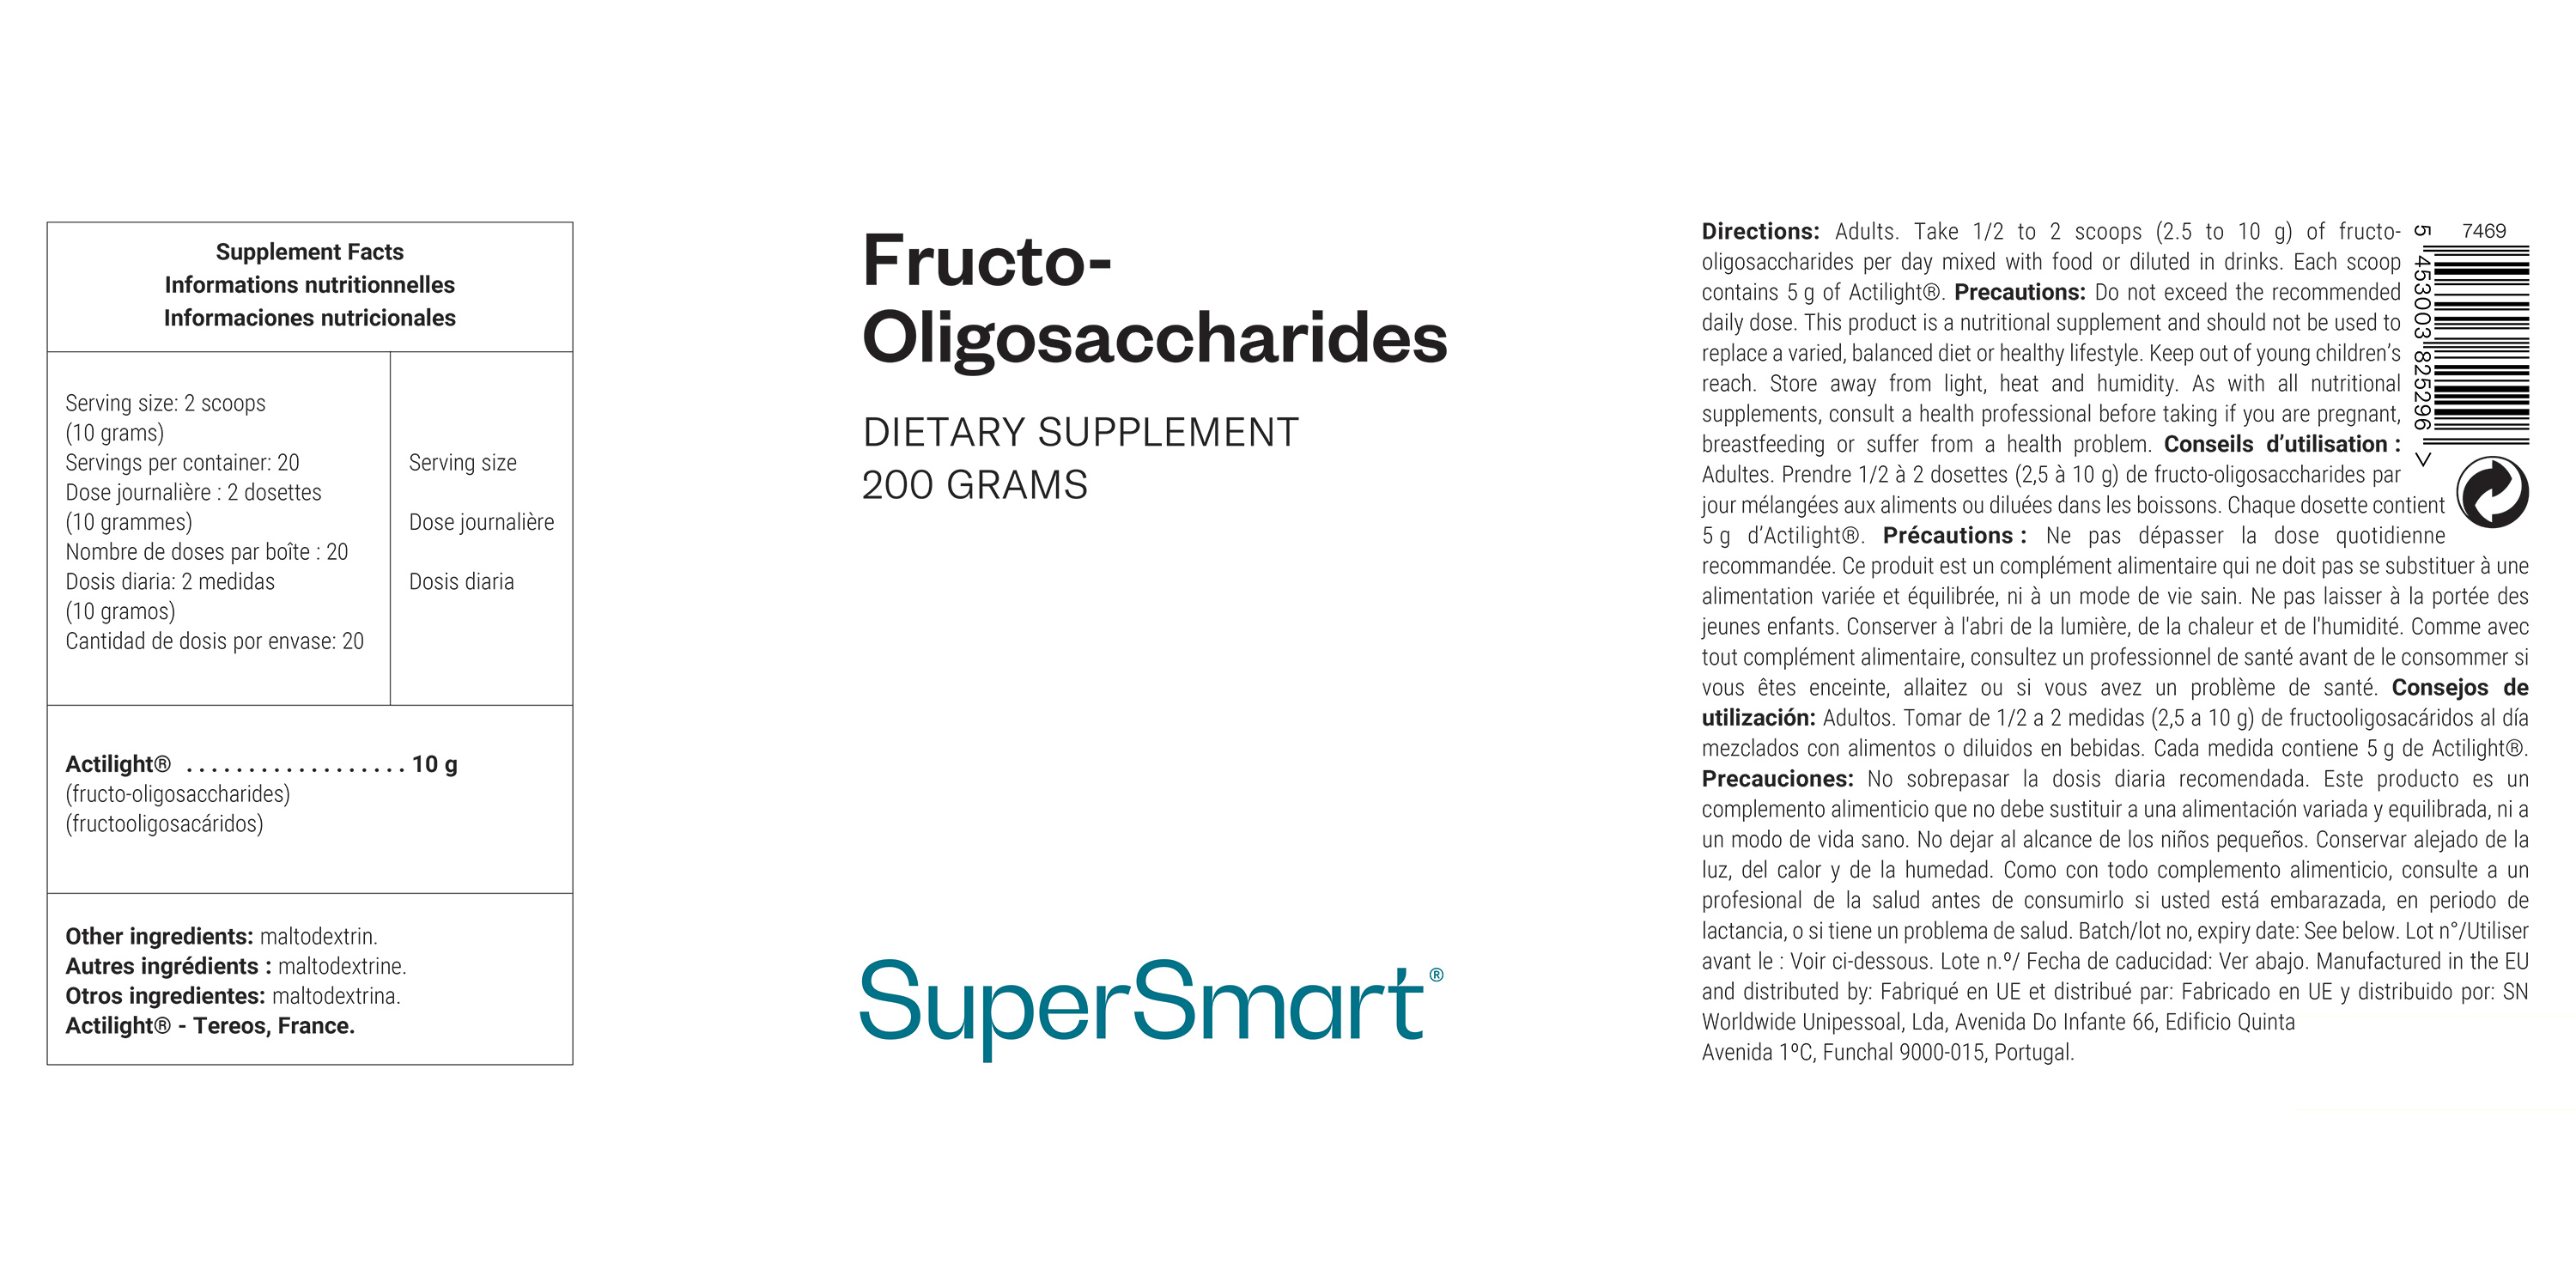 Foto eines Topfes mit dem Ergänzungspräparat Fructo-Oligosaccharide